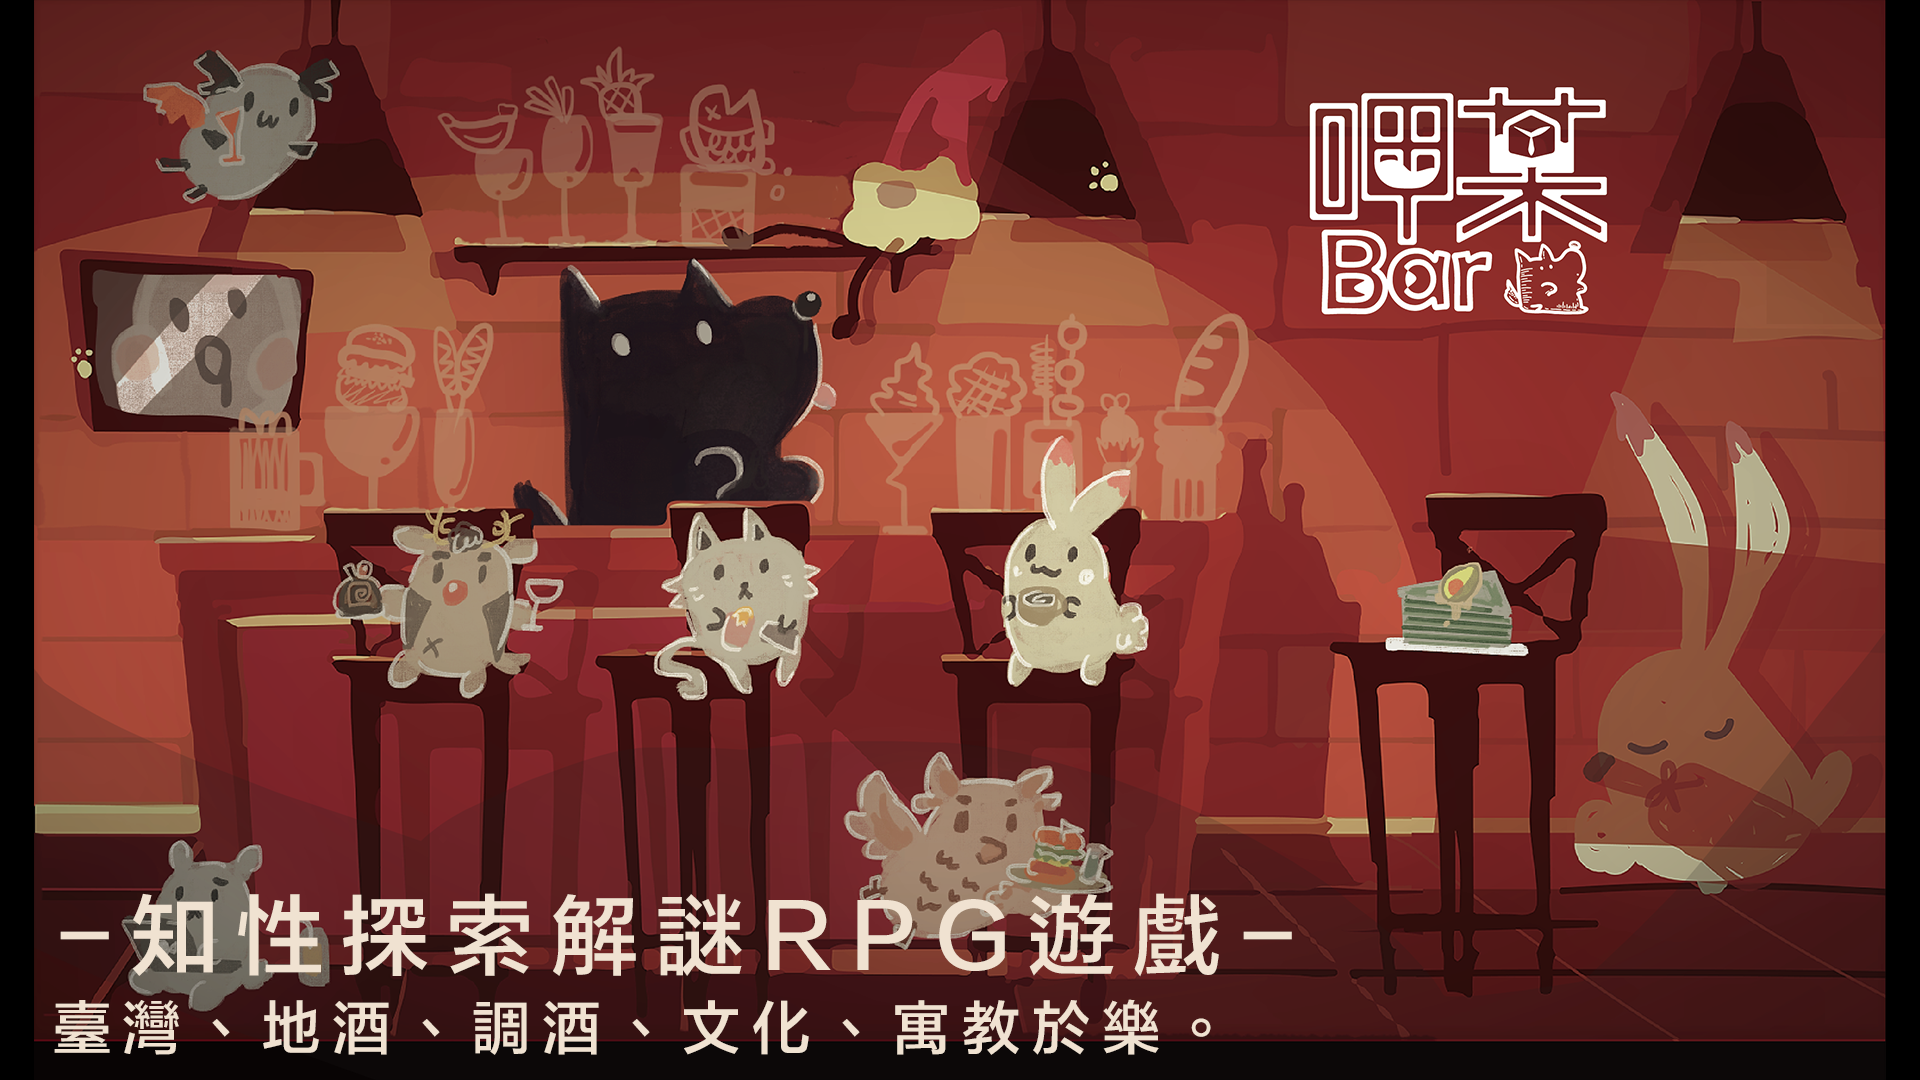 《呷某Bar》探索臺灣調酒文化的祕密風味~ 顛覆RPG遊戲的創新調飲之路~